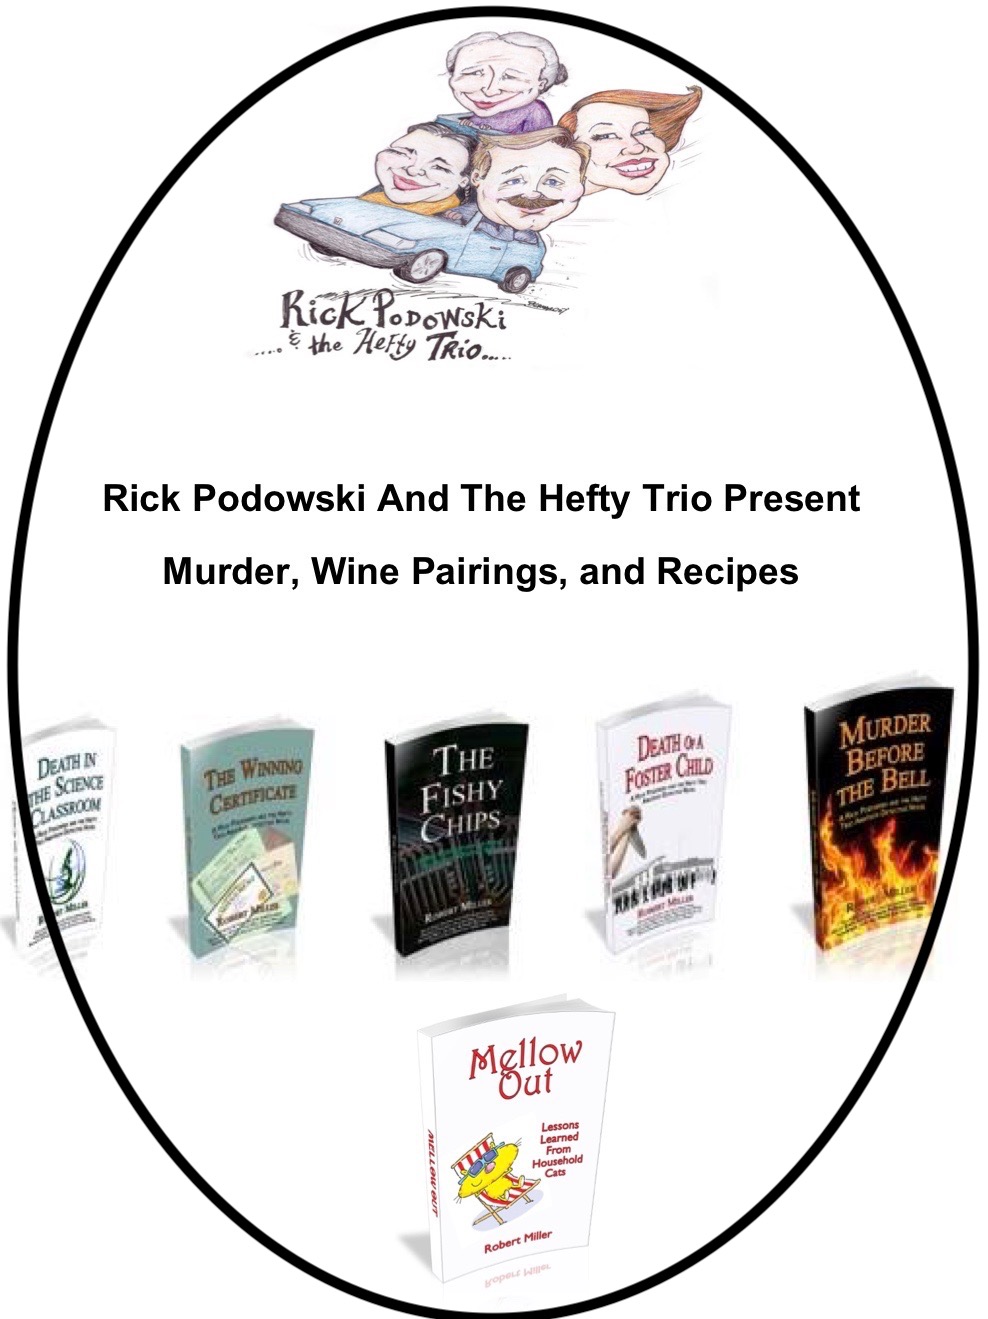 Rick Podowski and The Hefty Trio Presents